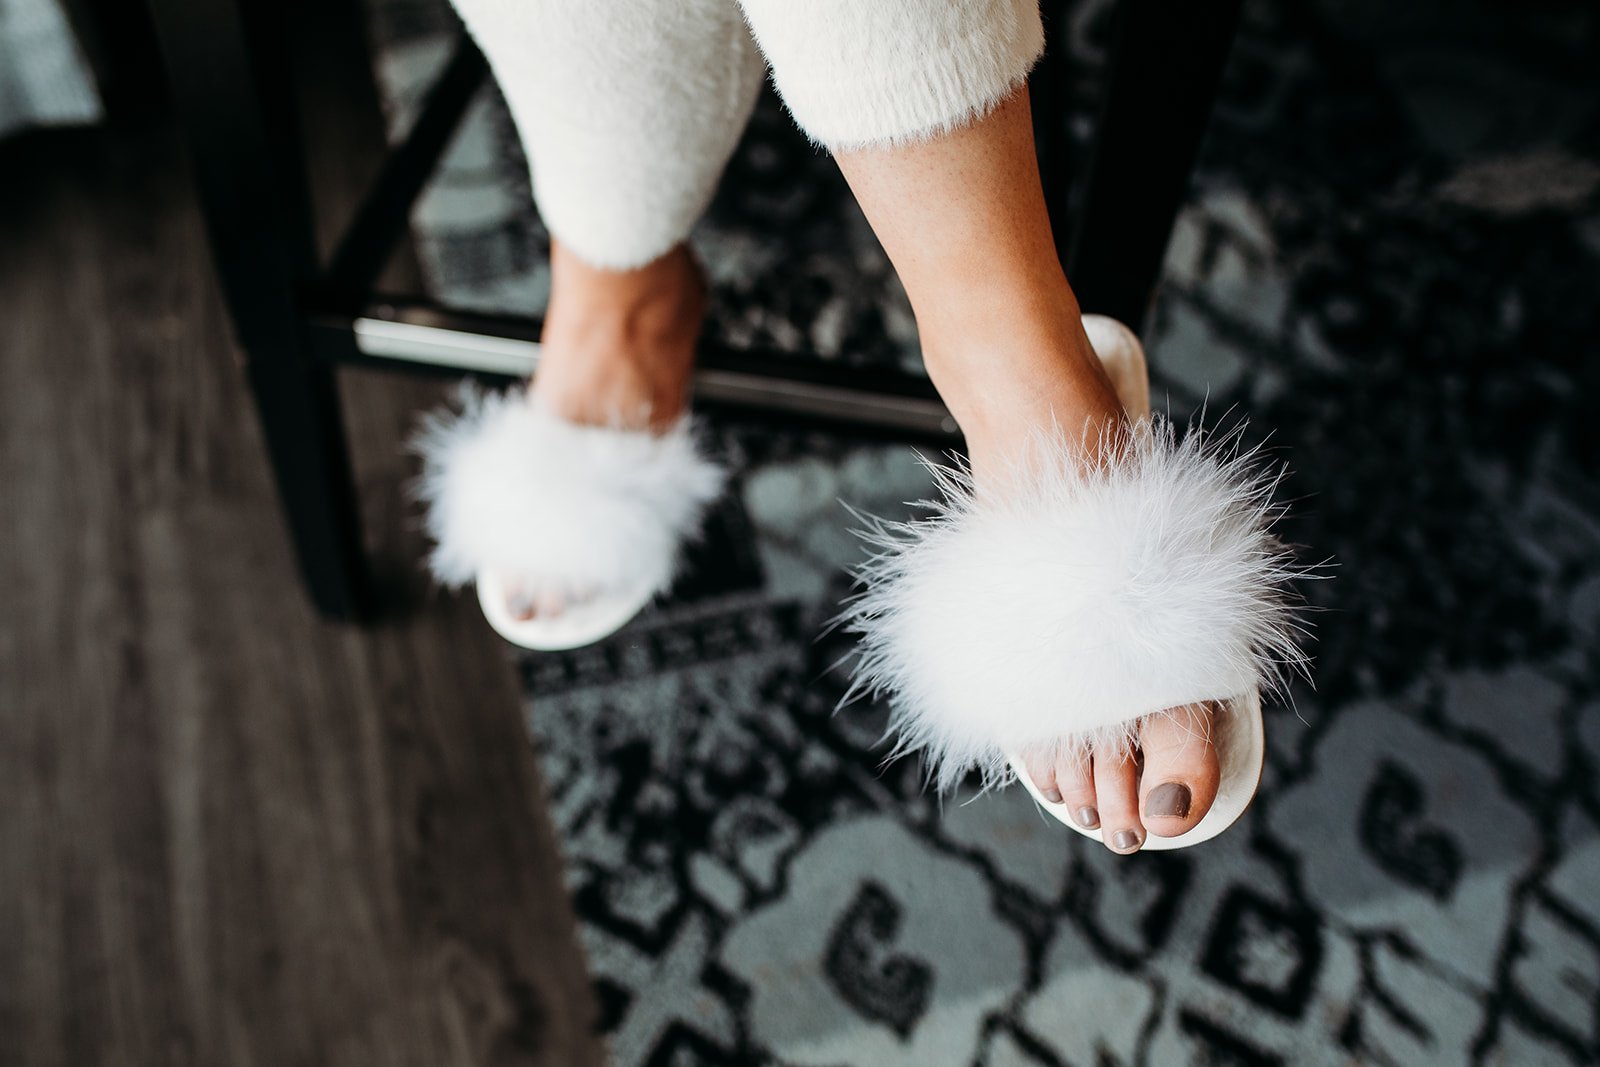 bride's fluffy slippers on her feet preparing for wedding